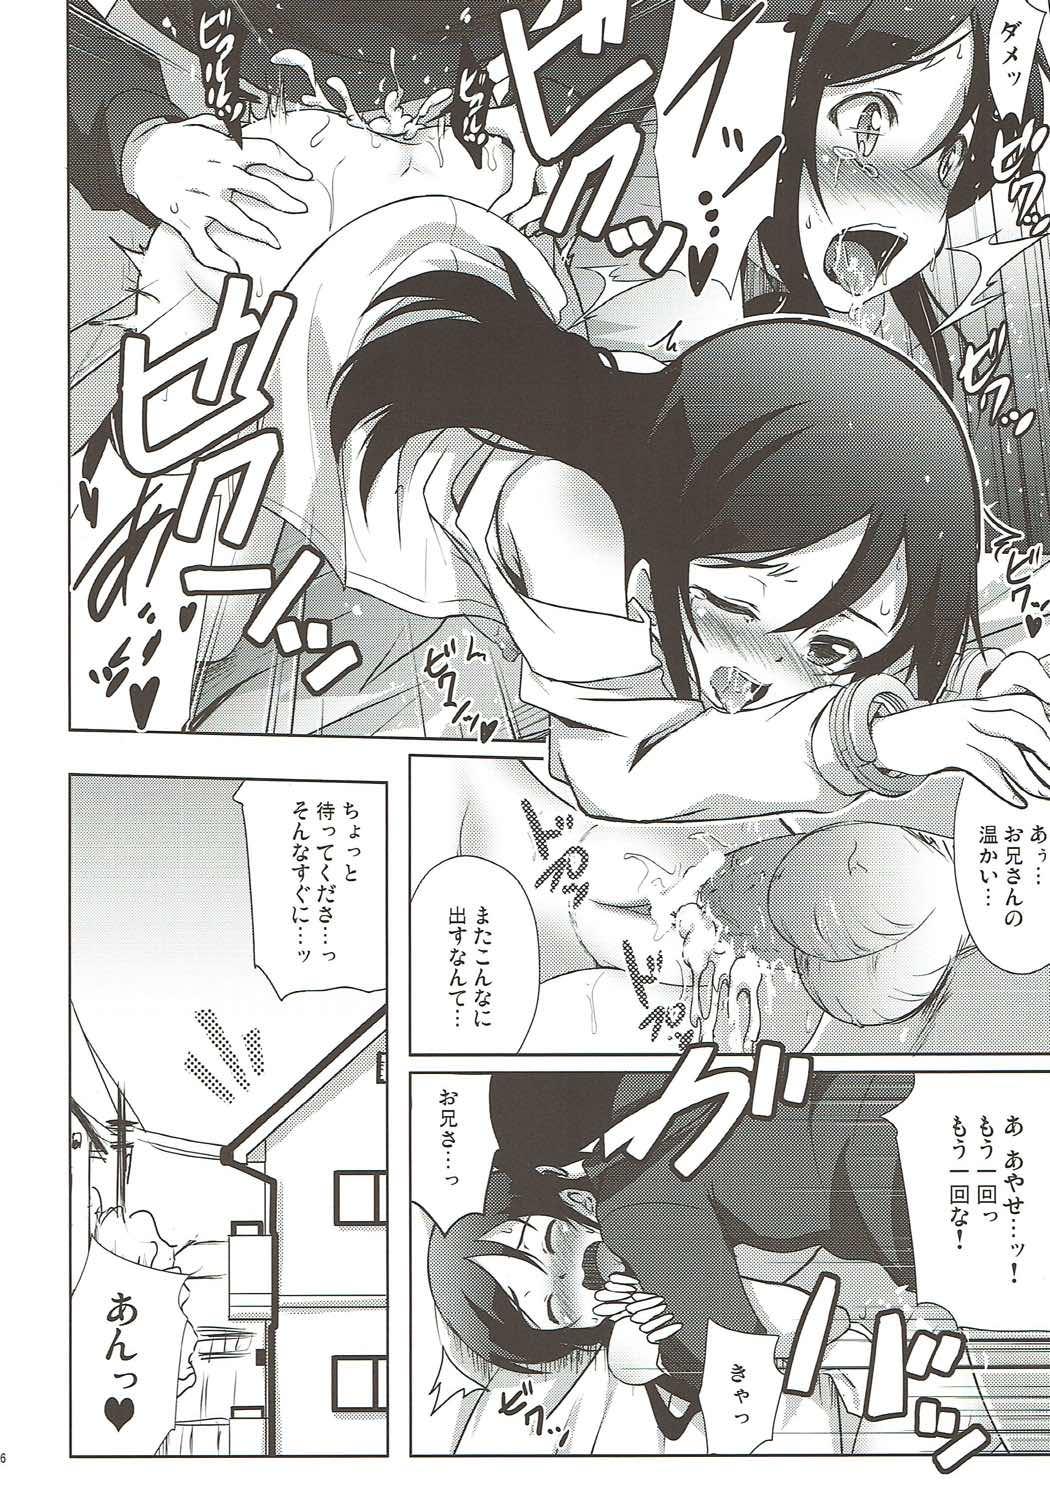 Solo Girl Onii-san no Ecchi! Hentai! - Ore no imouto ga konna ni kawaii wake ga nai Blondes - Page 15